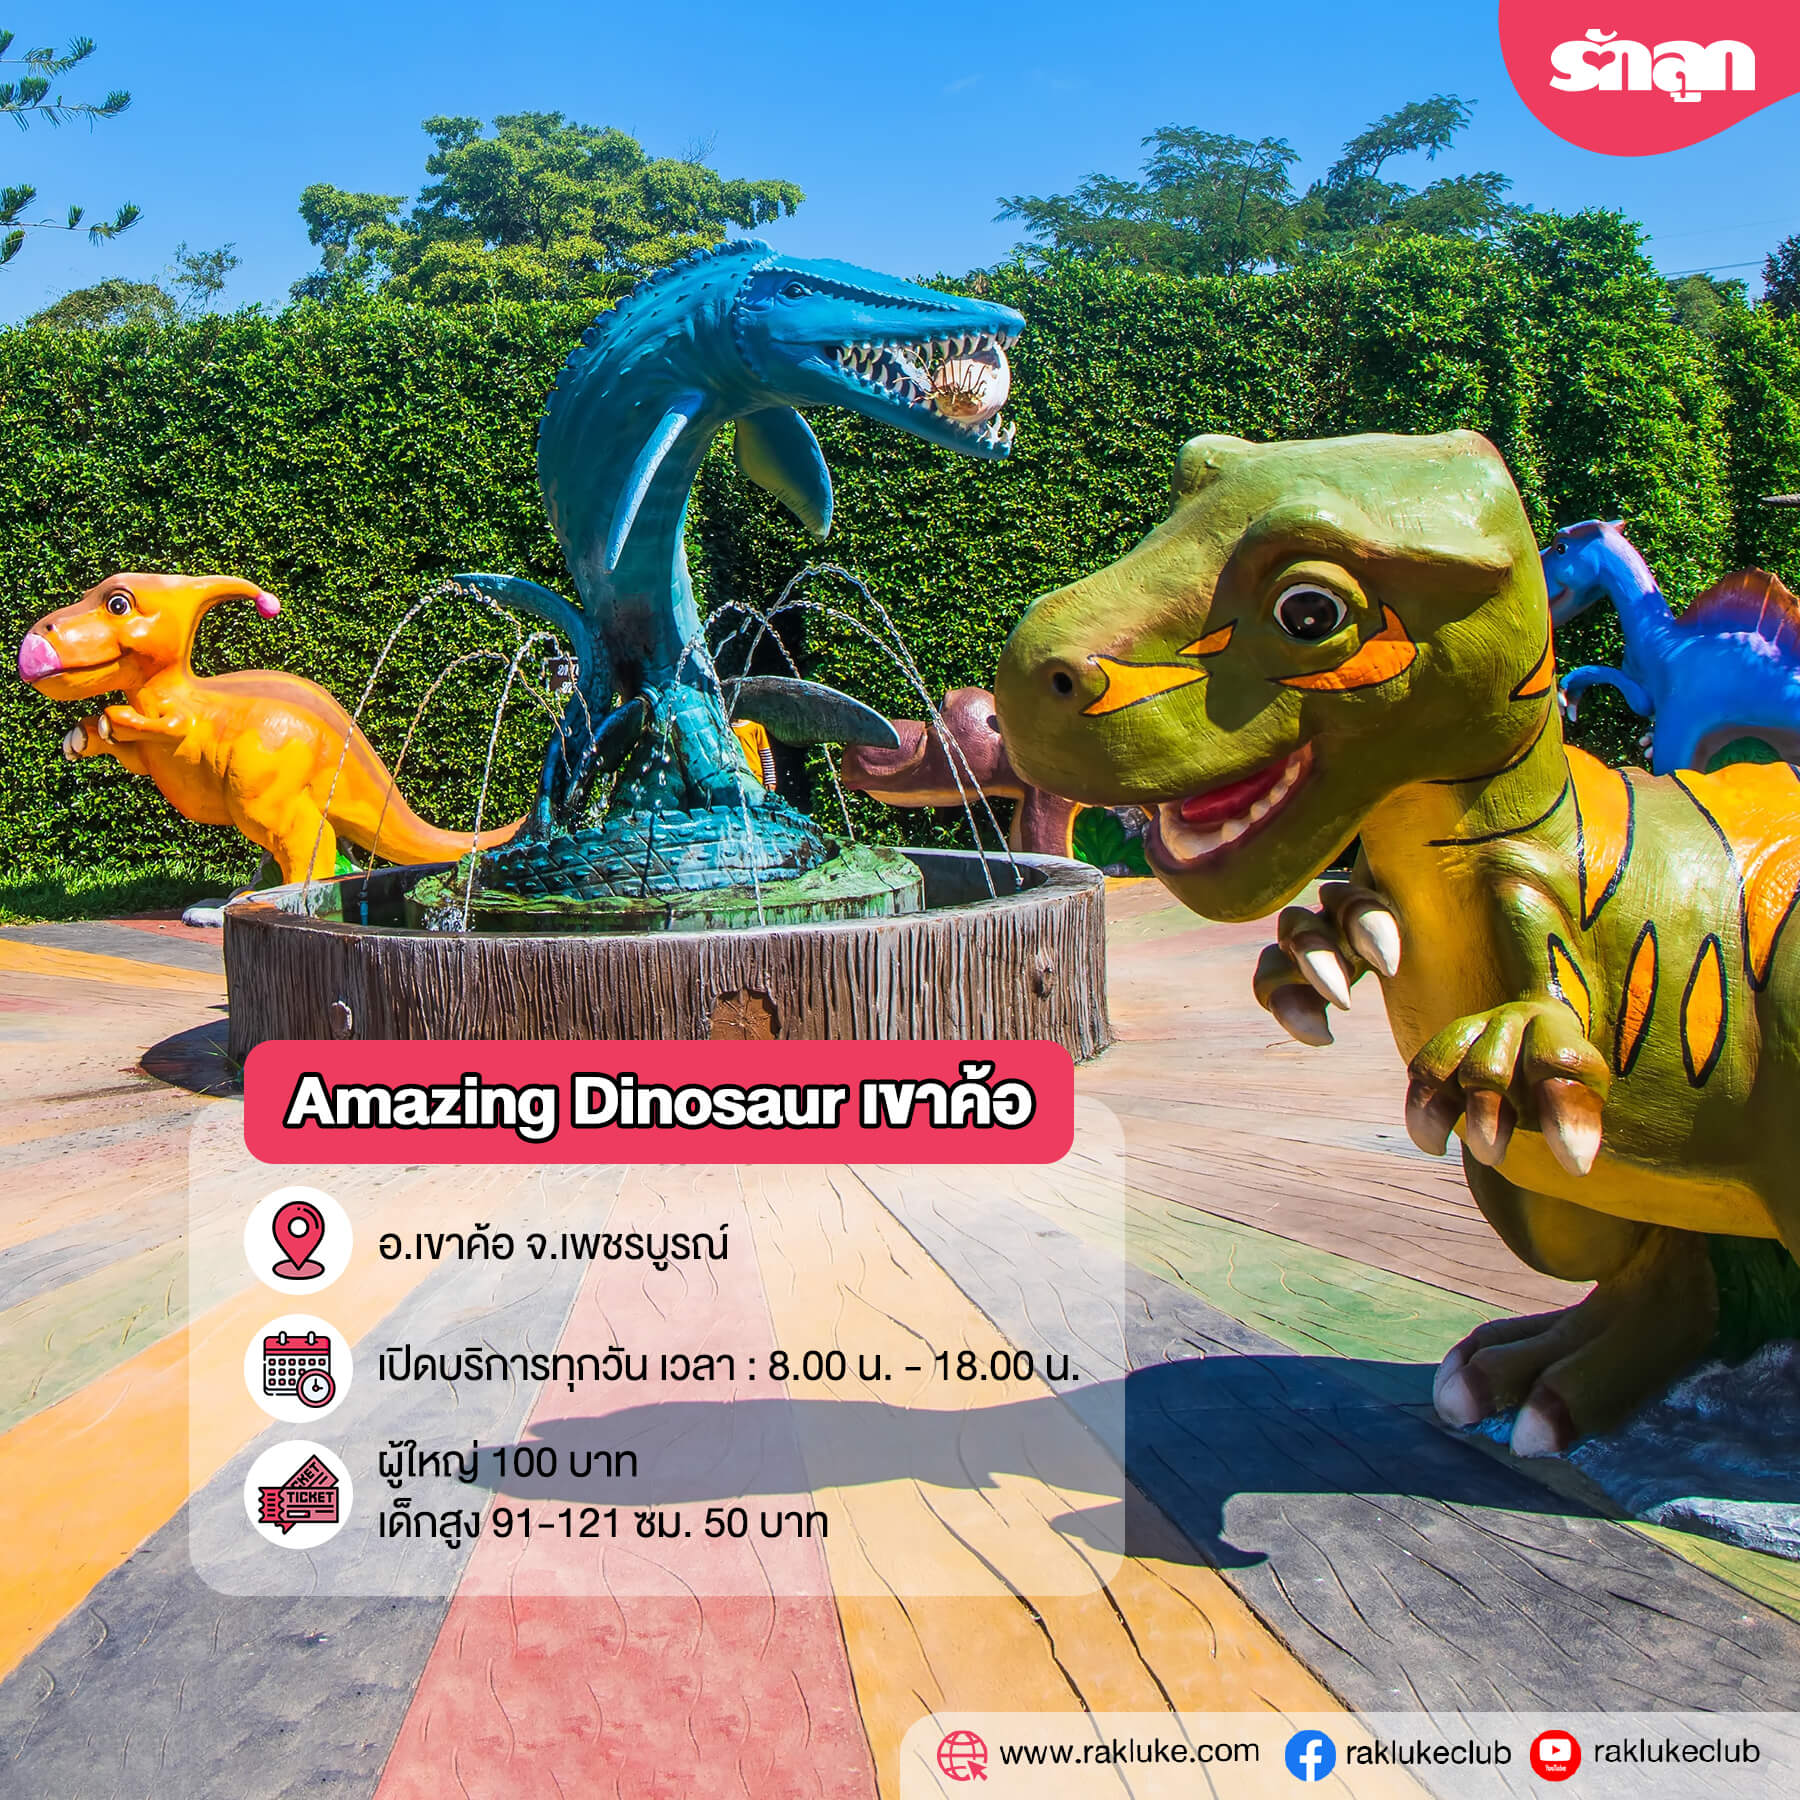 ไดโนเสาร์-พิพิธภัณฑ์ไดโนเสาร์-แหล่งท่องเที่ยวในประเทศไทย-แหล่งท่องเที่ยวเกี่ยวกับไดโนเสาร์-แหล่งท่องเที่ยวชมไดโนเสาร์-Hidden Village เชียงใหม่-Amazing Dinosaur เขาค้อ-พิพิธภัณฑ์ไดโนเสาร์ภูเวียง-พิพิธภัณฑ์สิรินธร-หุบเขาไดโนเสาร์ สวนนงนุช พัทยา-สวนนงนุช พัทยา-พิพิธภัณฑ์ไดโนเสาร์ปทุมธานี-ไดโนเสาร์ สวนสยาม